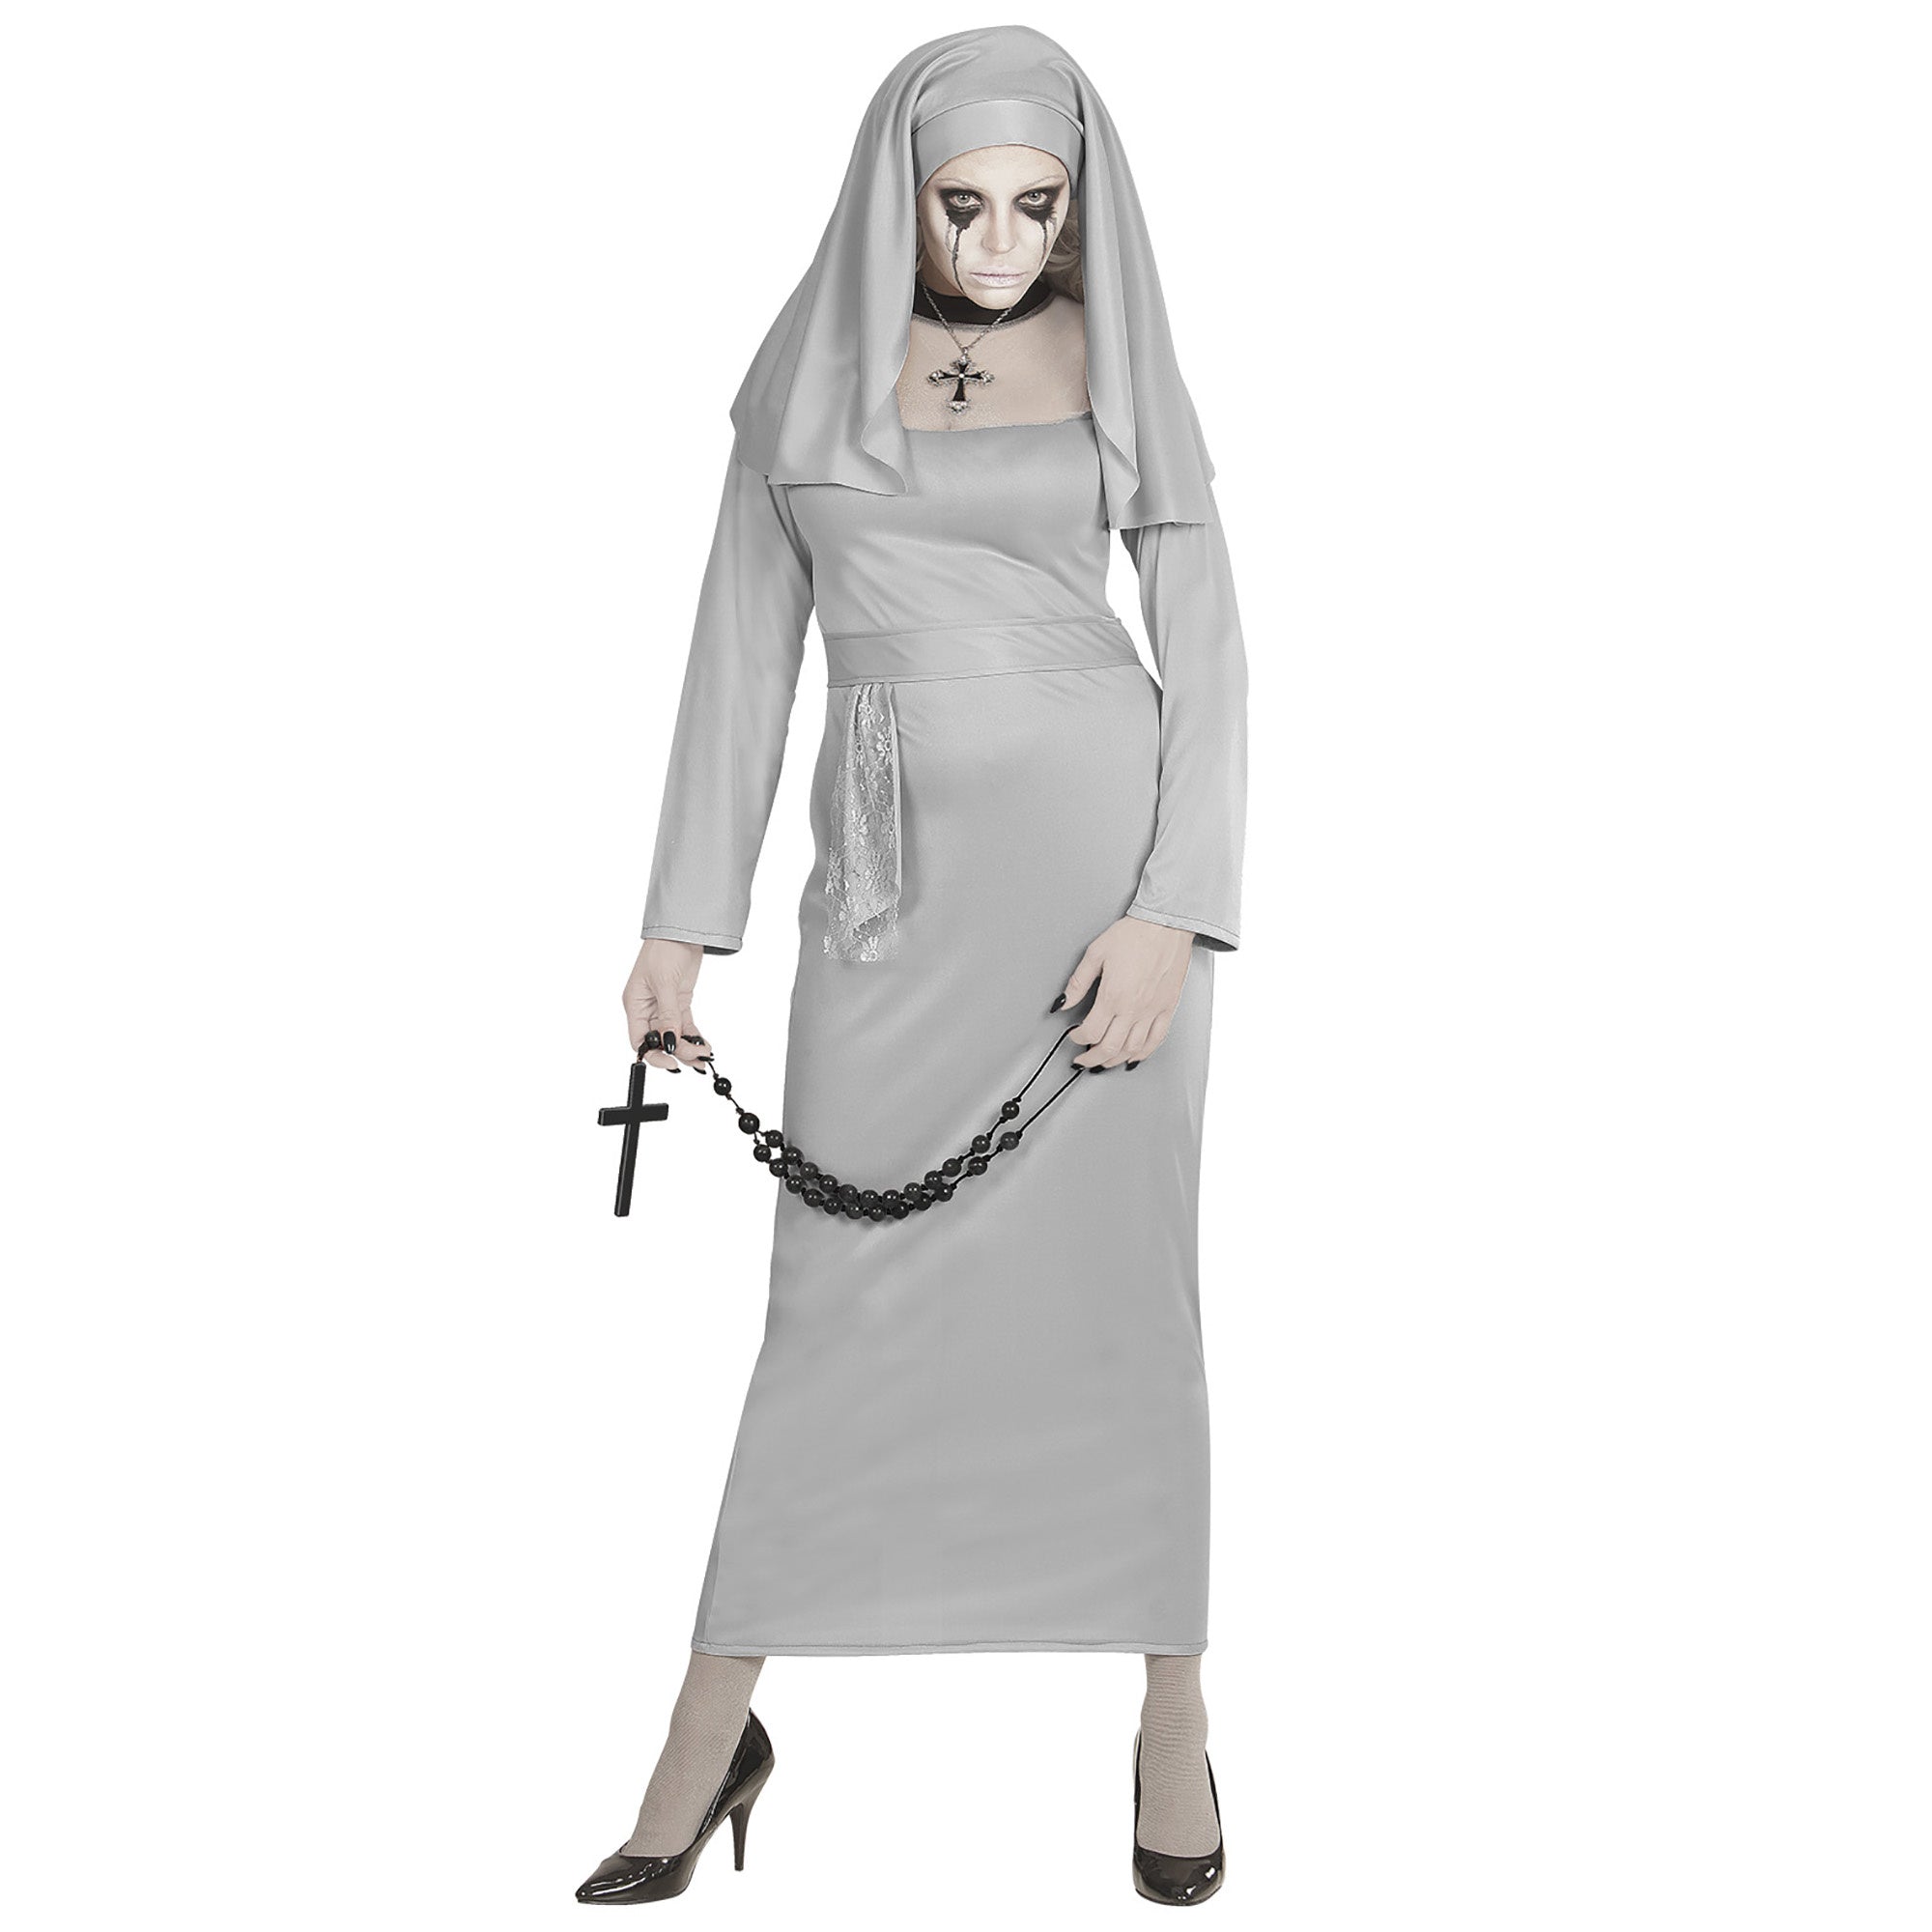 WIDMANN - Horror zuster non kostuum voor vrouwen - L